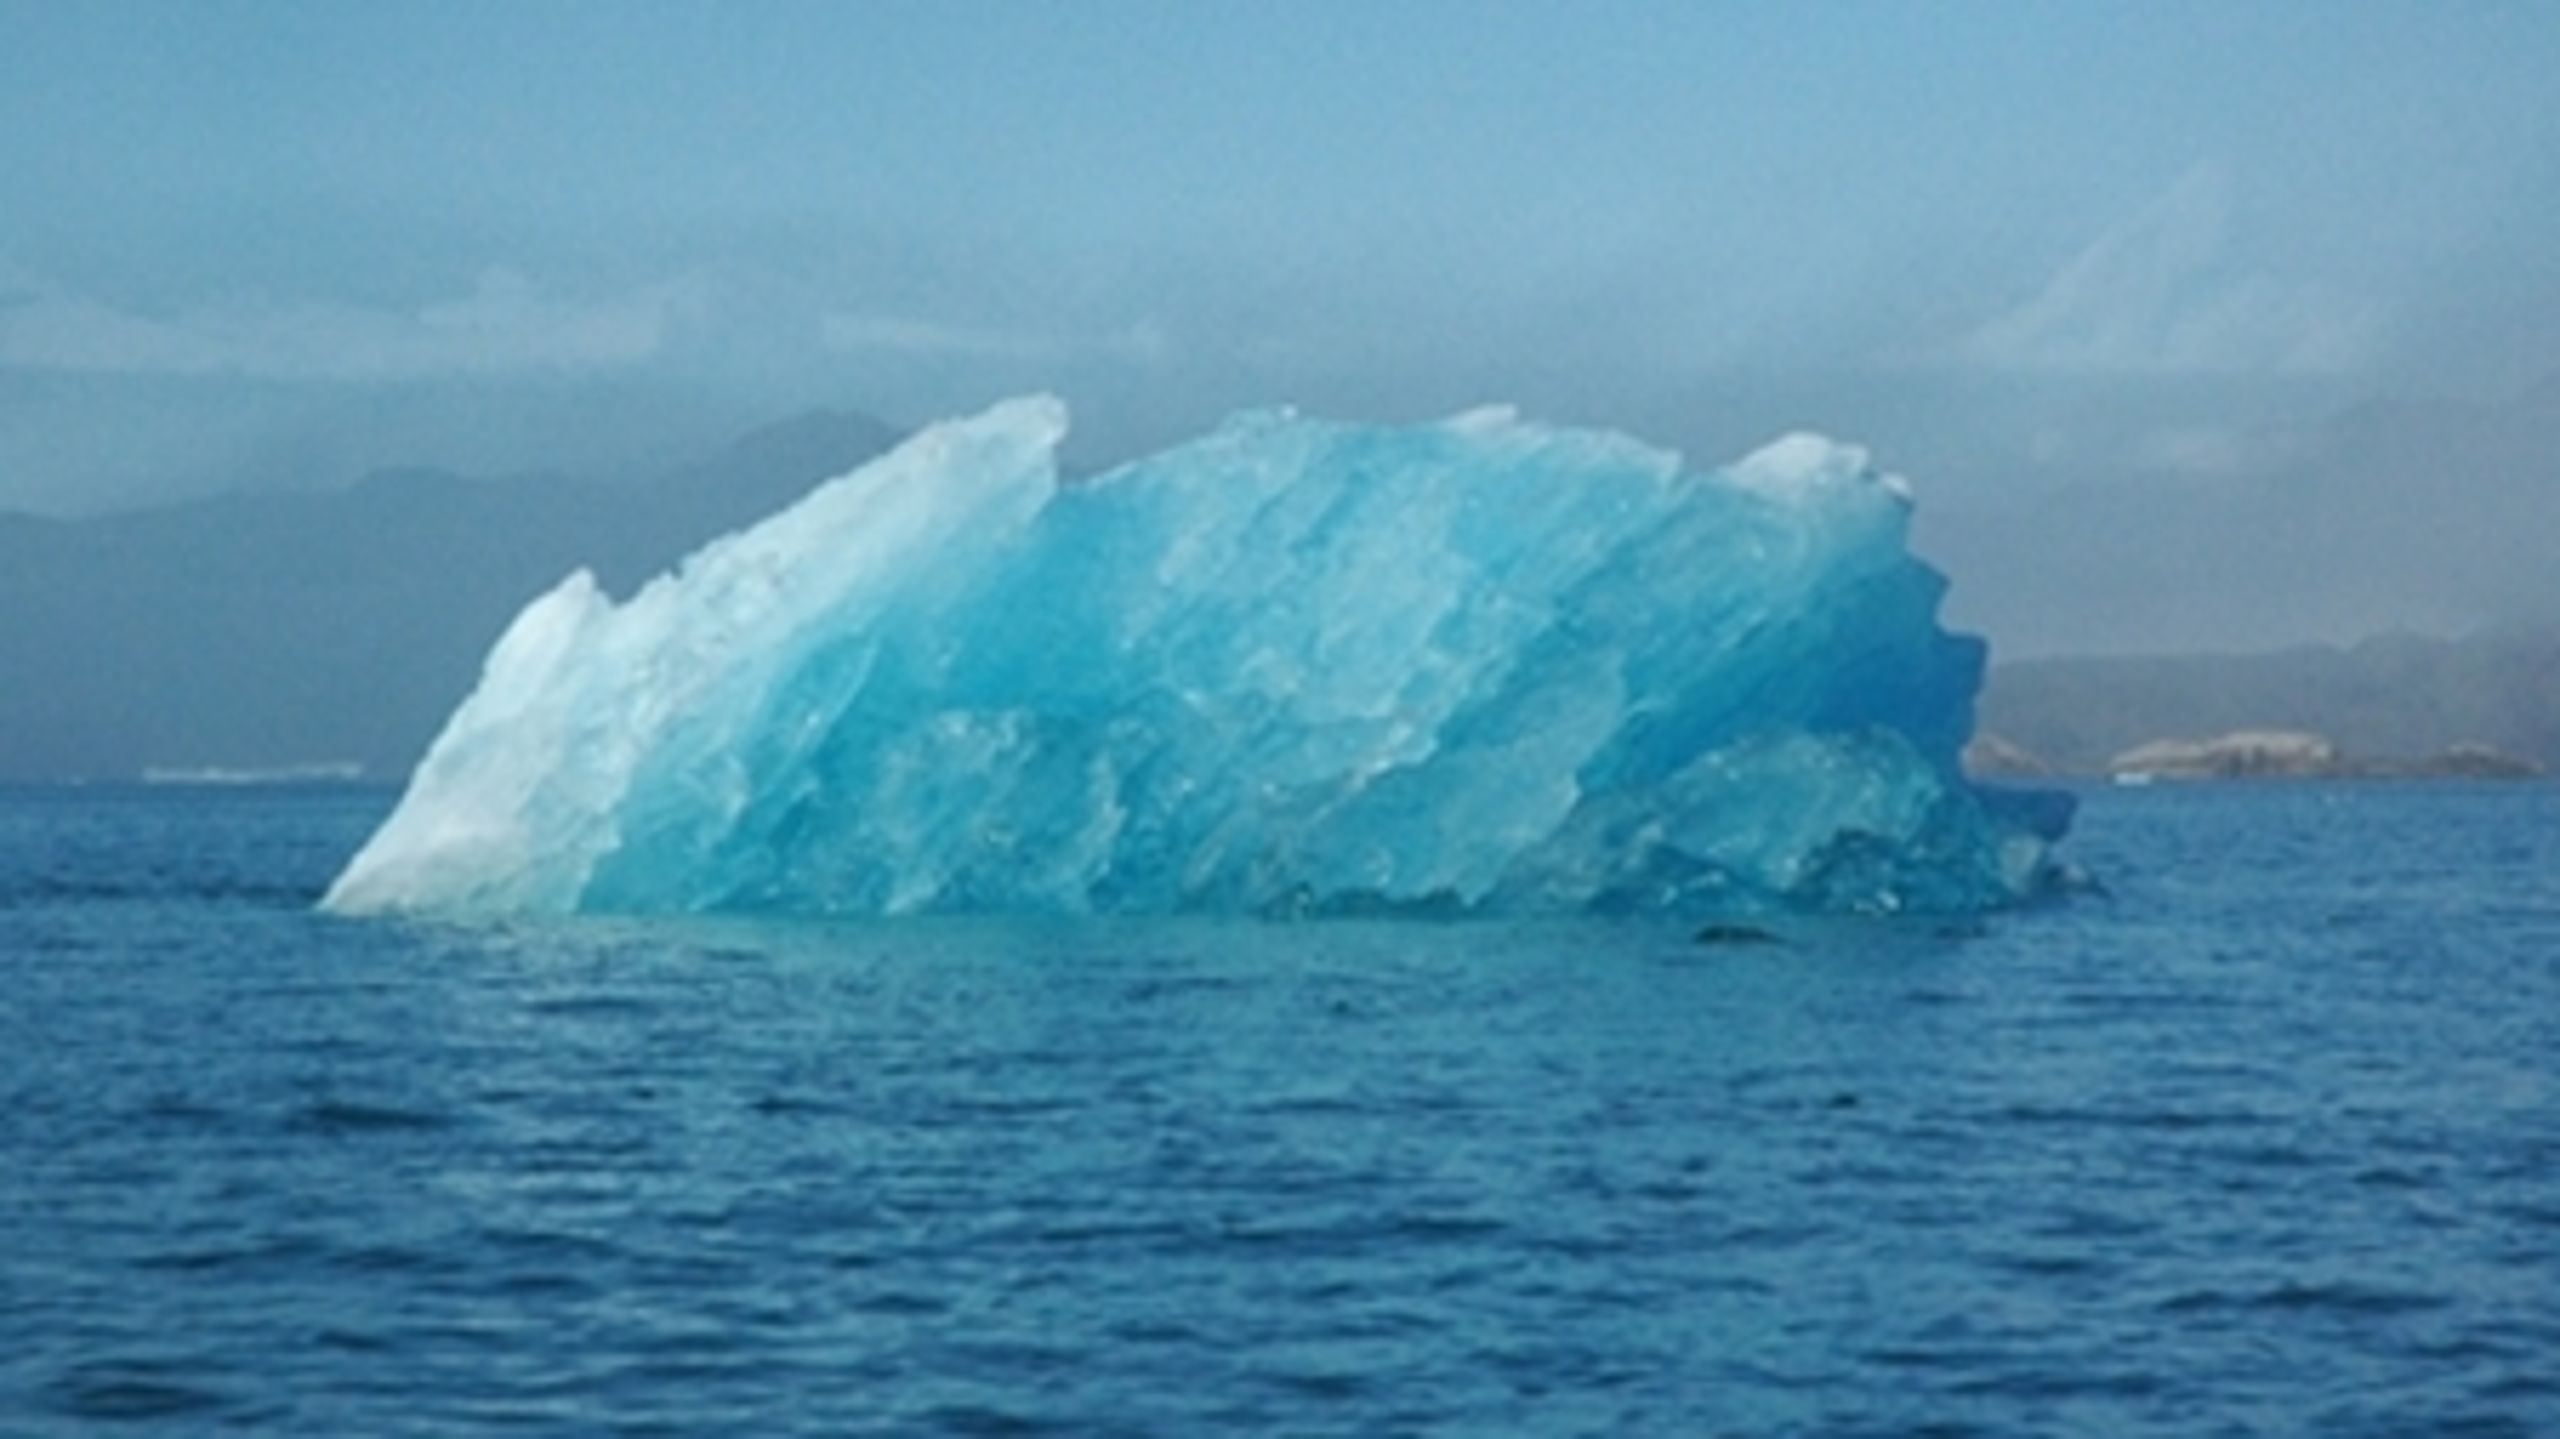 Grønland fremover føre sin egen klimapolitik. Det er dog usikkert, hvad det helt kommer til at betyde.